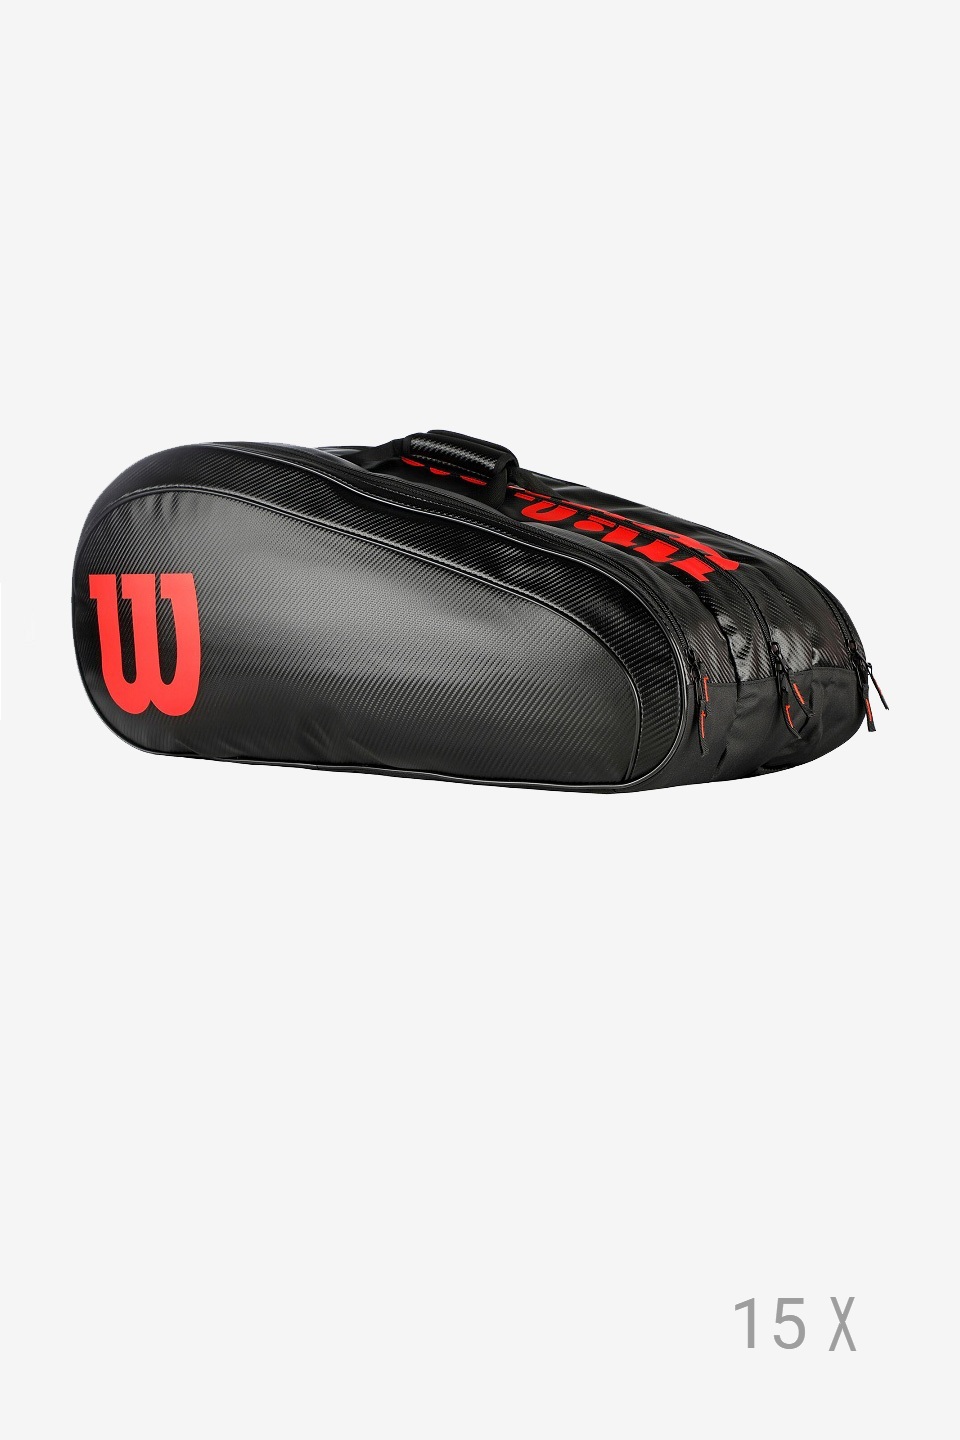 WİLSON - Wilson Elite Racket Bag Siyah Kırmızı